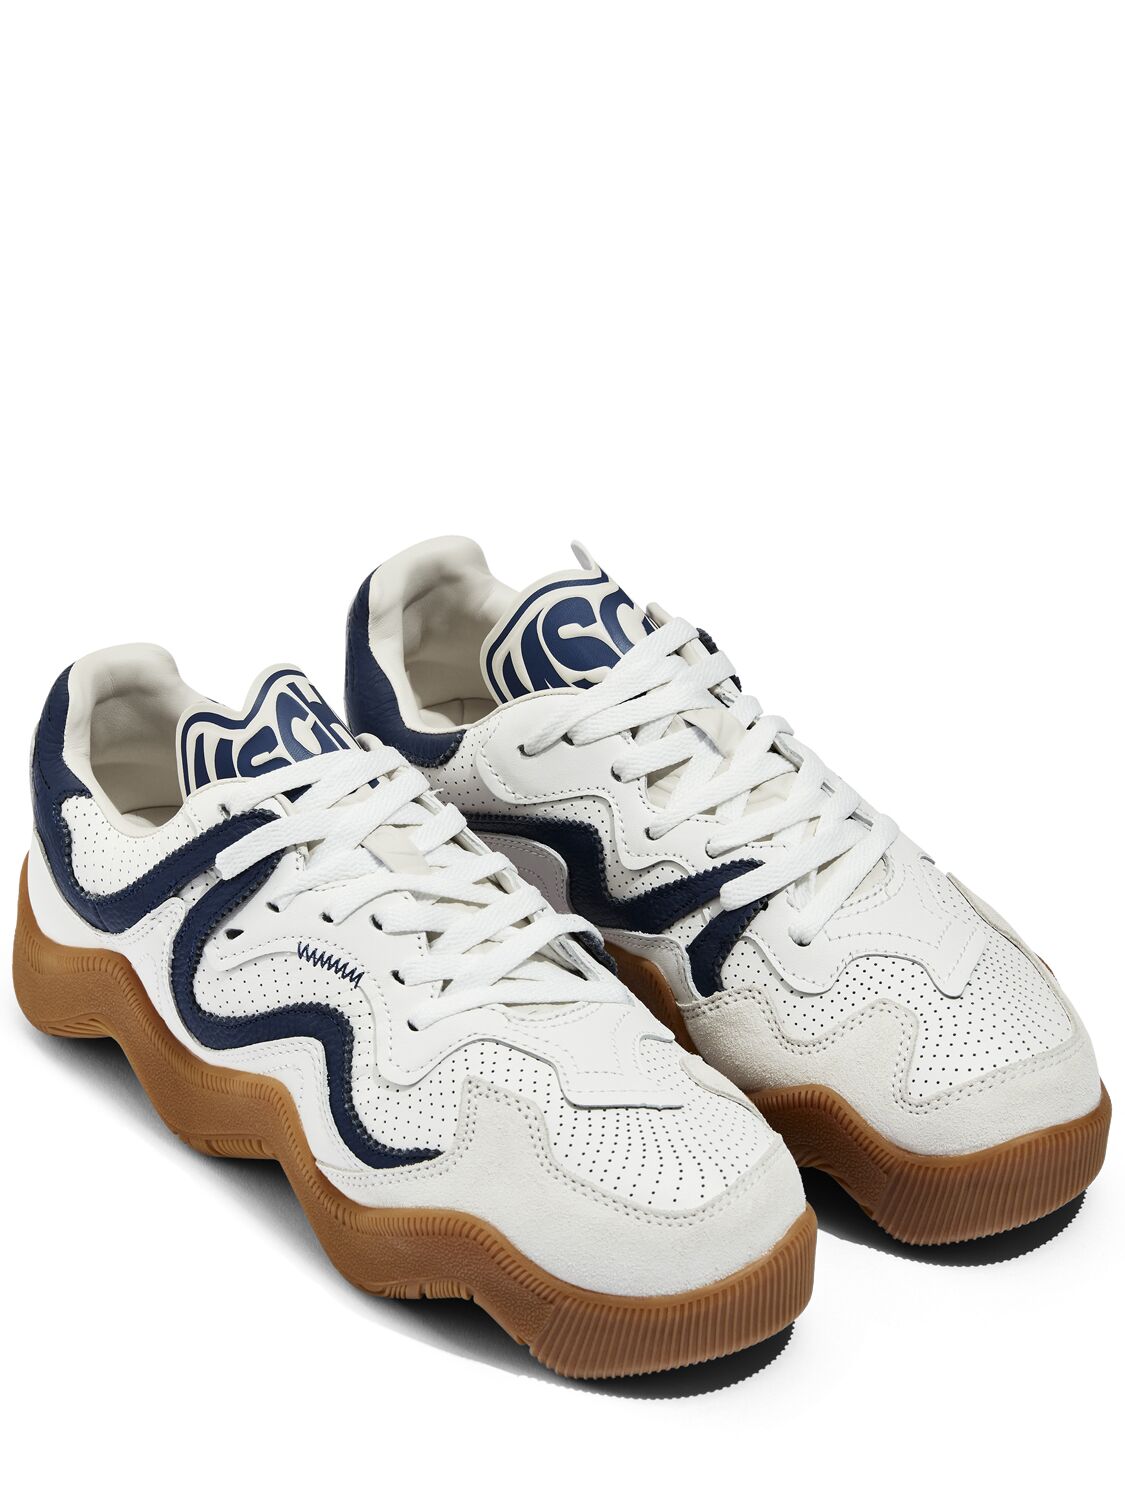 Mschf V2 Wavy Sneakers In White Blue